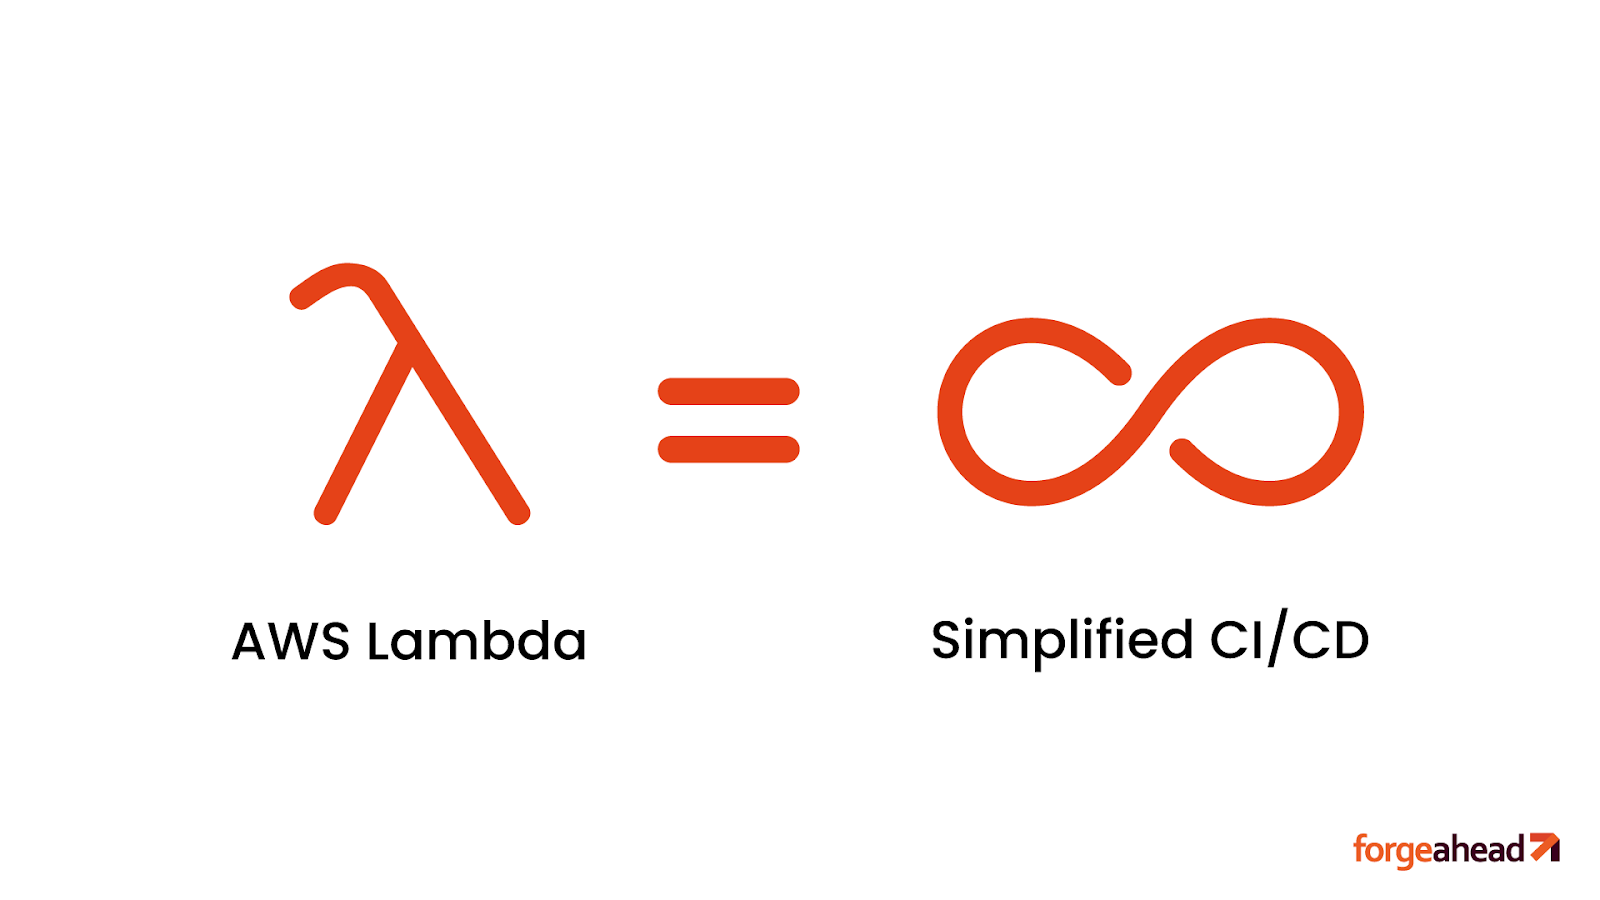 Resource Optimization with AWS Lambda 